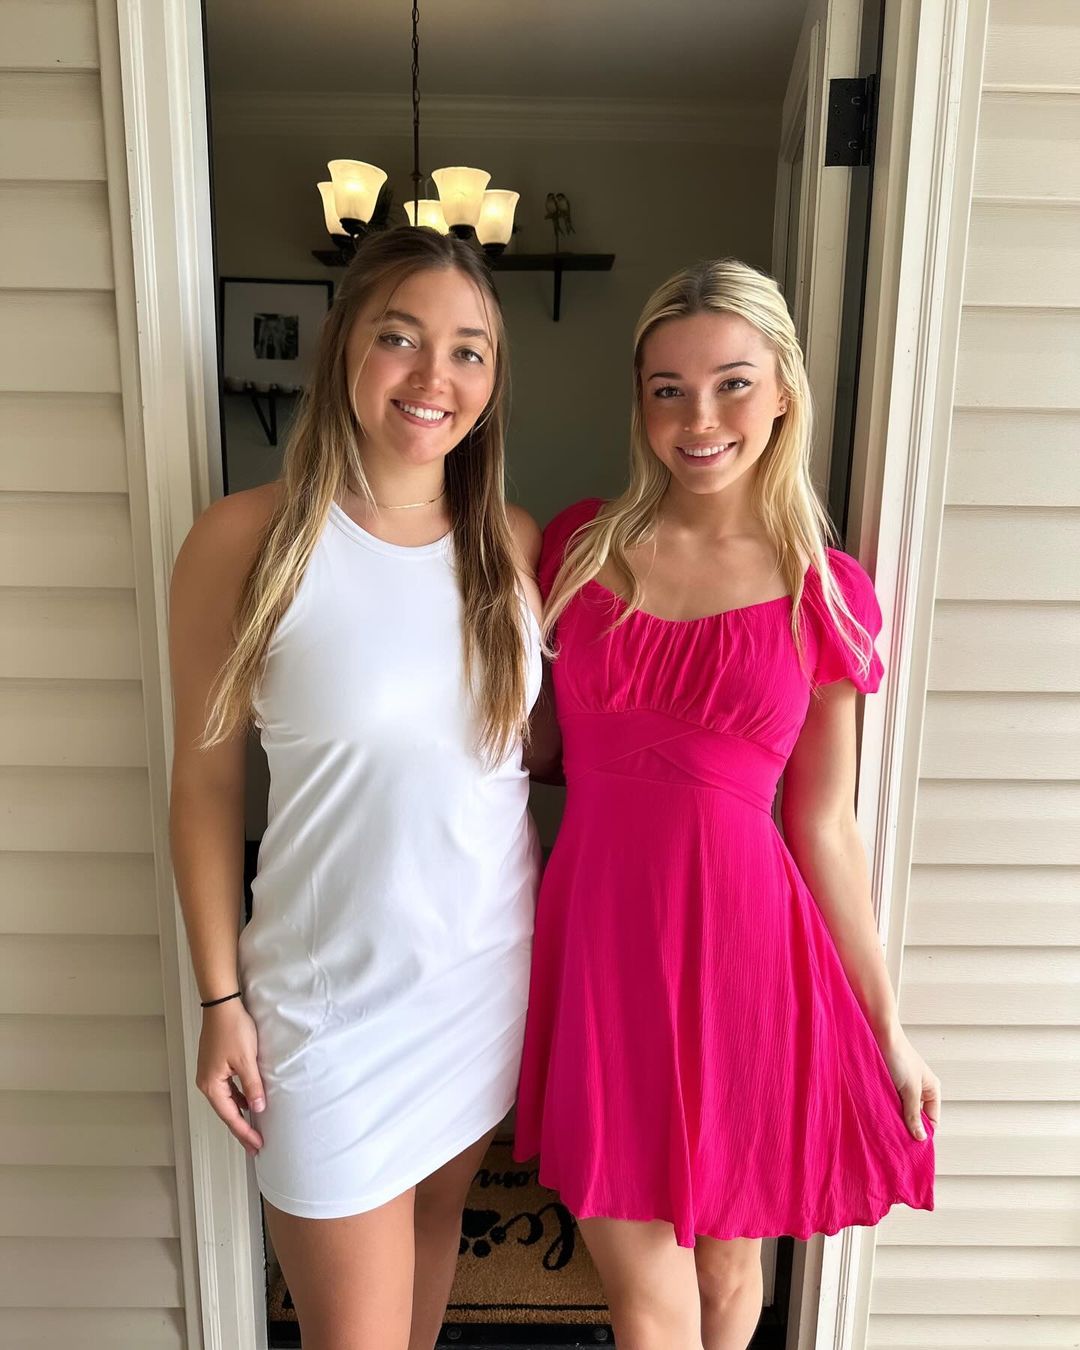 Dunne shared photos of Easter Sunday alongside her sister